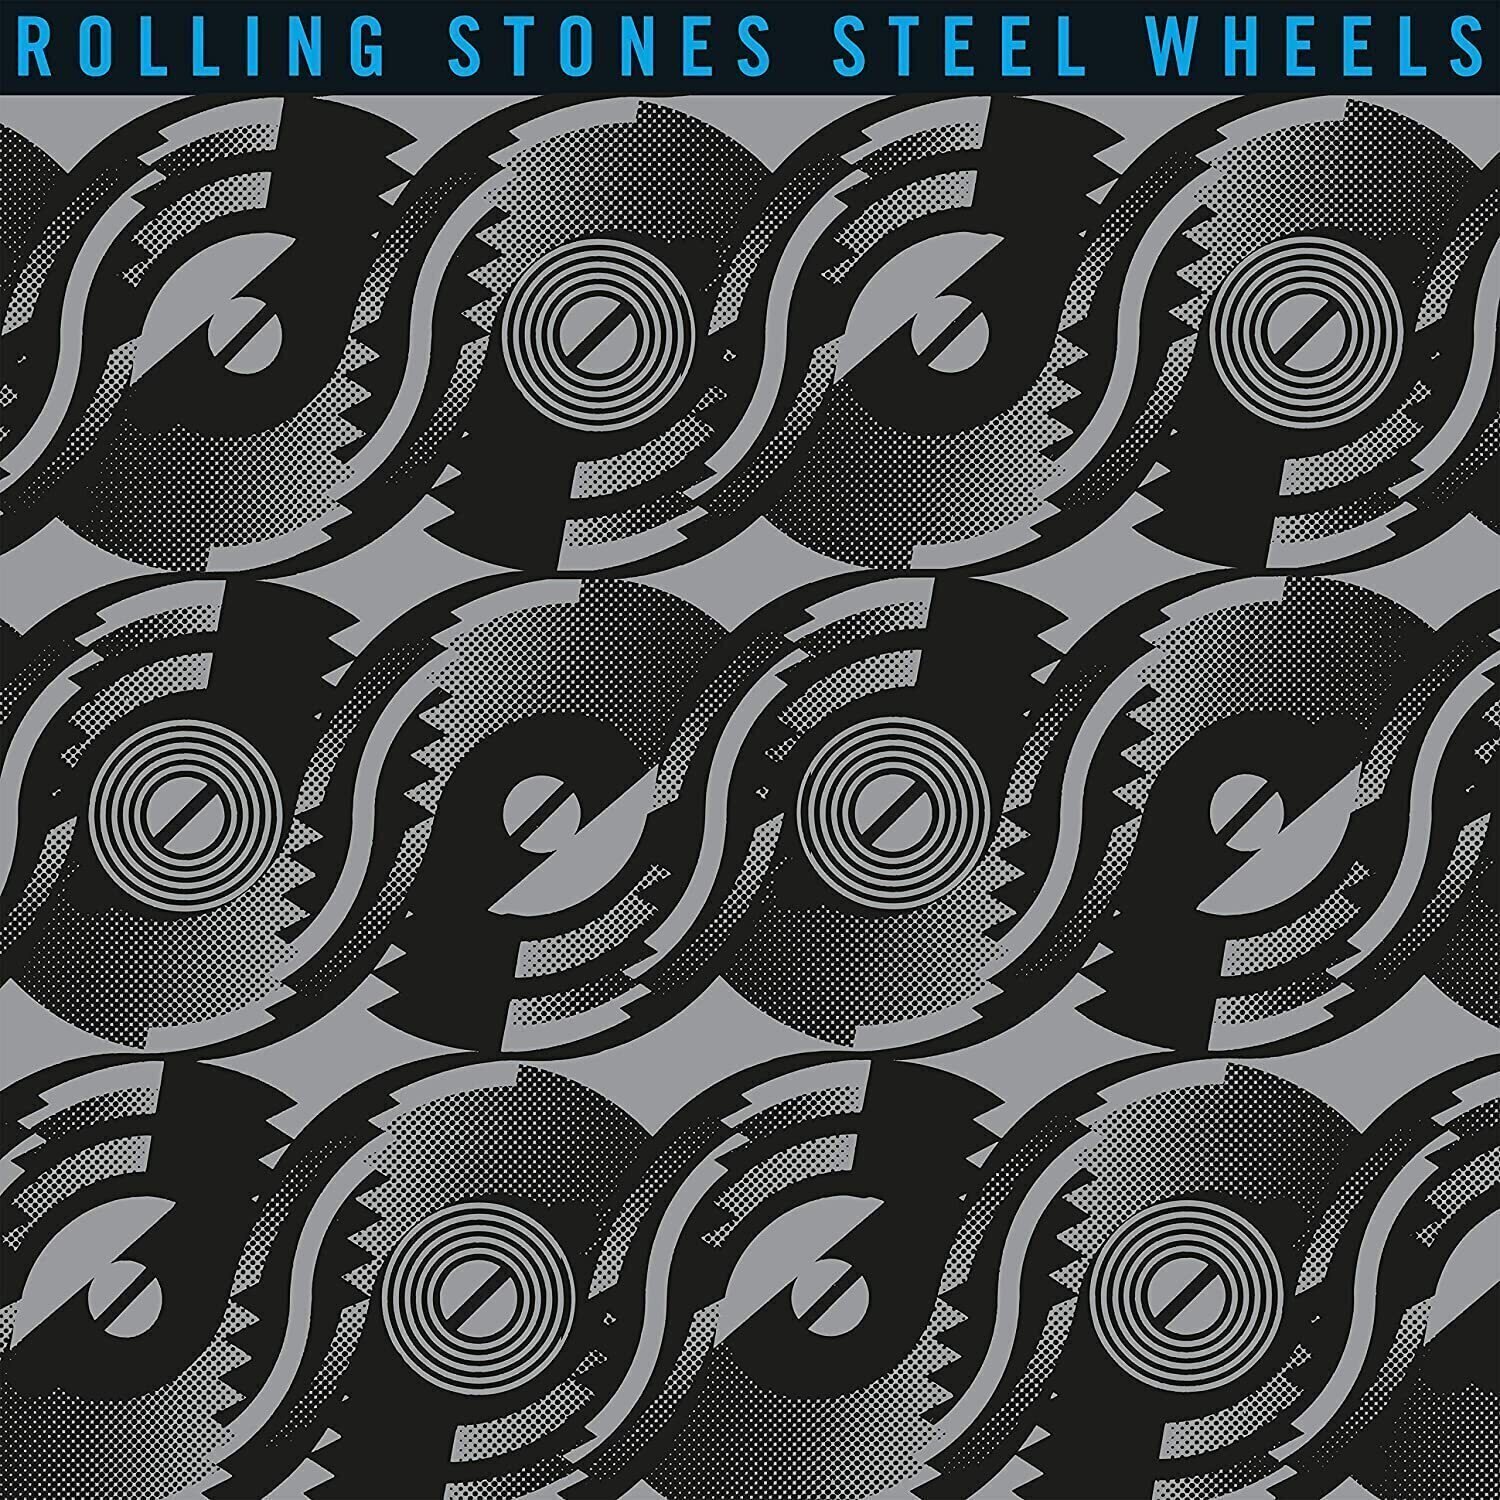 The Rolling Stones - Steel Wheels (Half Speed Vinyl) (LP) The Rolling Stones